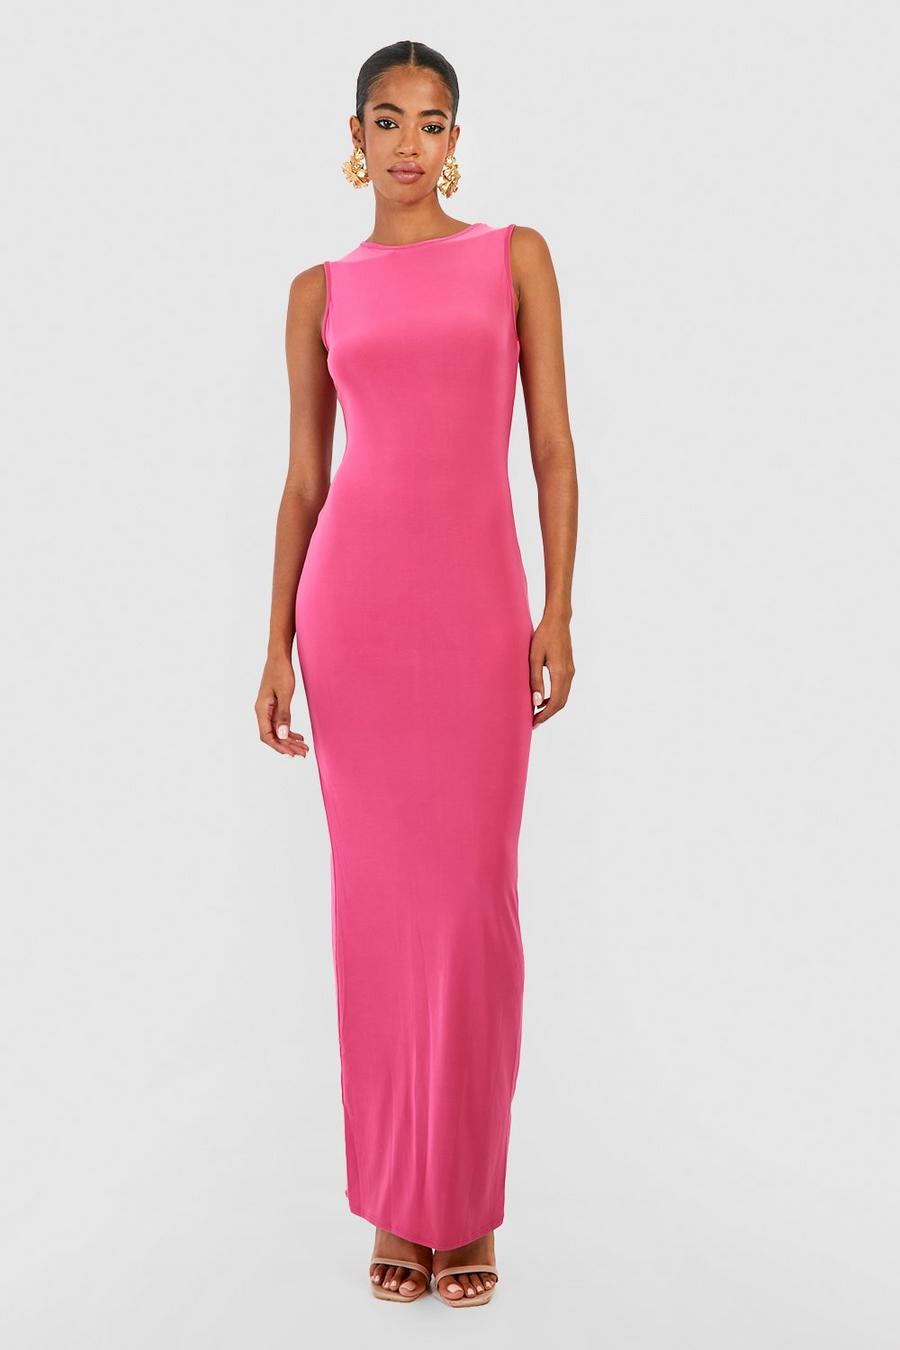 Pink שמלת מקסי פרימיום ללא שרוולים מבד עבה נצמד